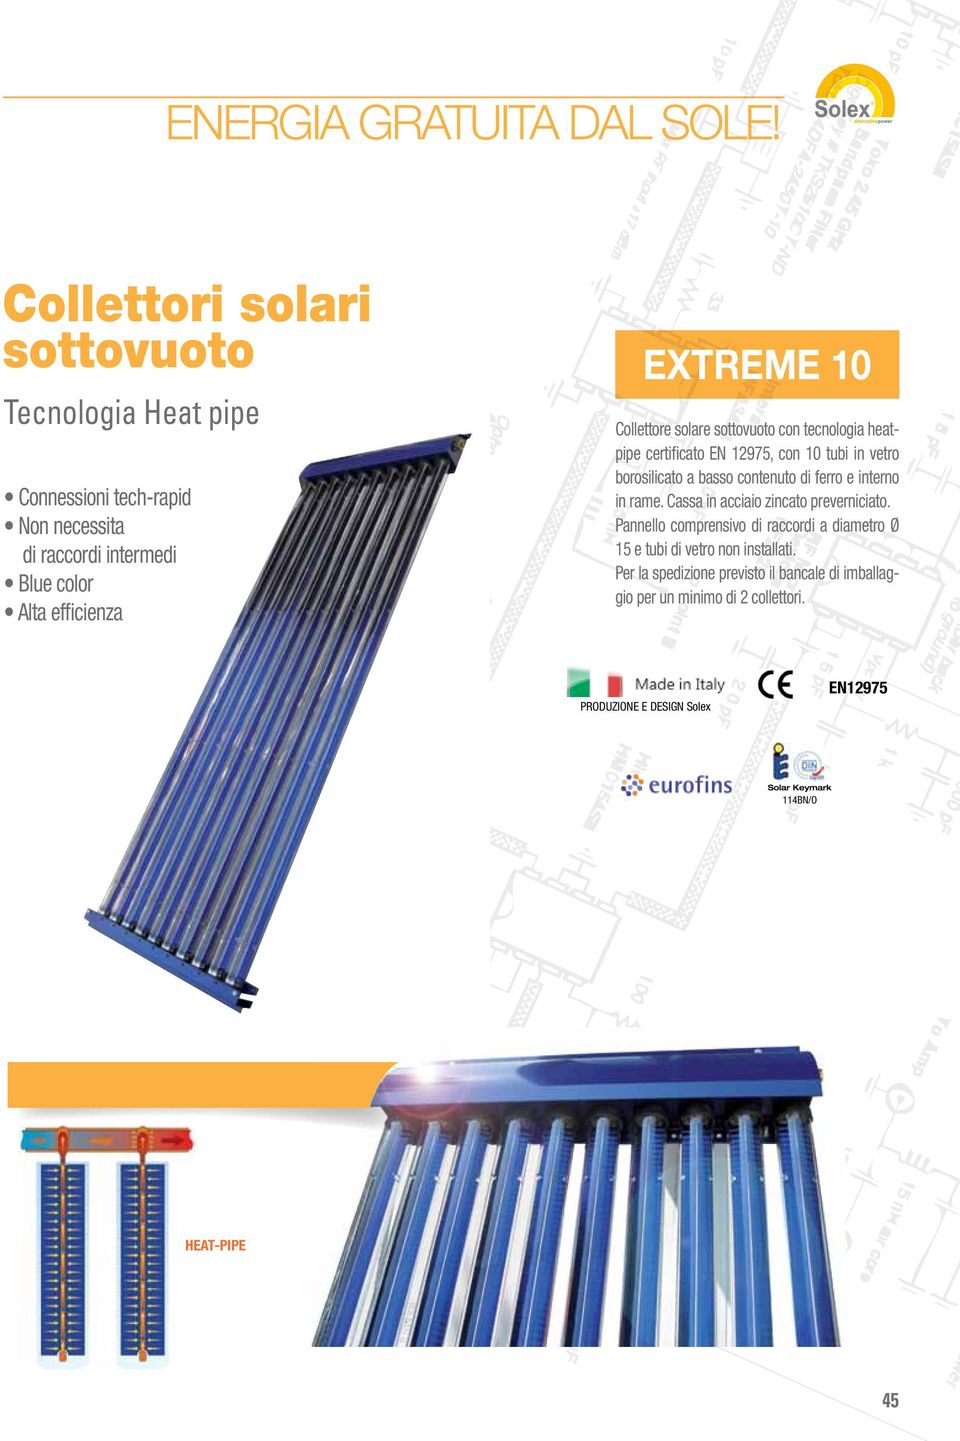 Collettore solare sottovuoto con tecnologia heatpipe certificato EN 12975, con 10 tubi in vetro borosilicato a basso contenuto di ferro e interno